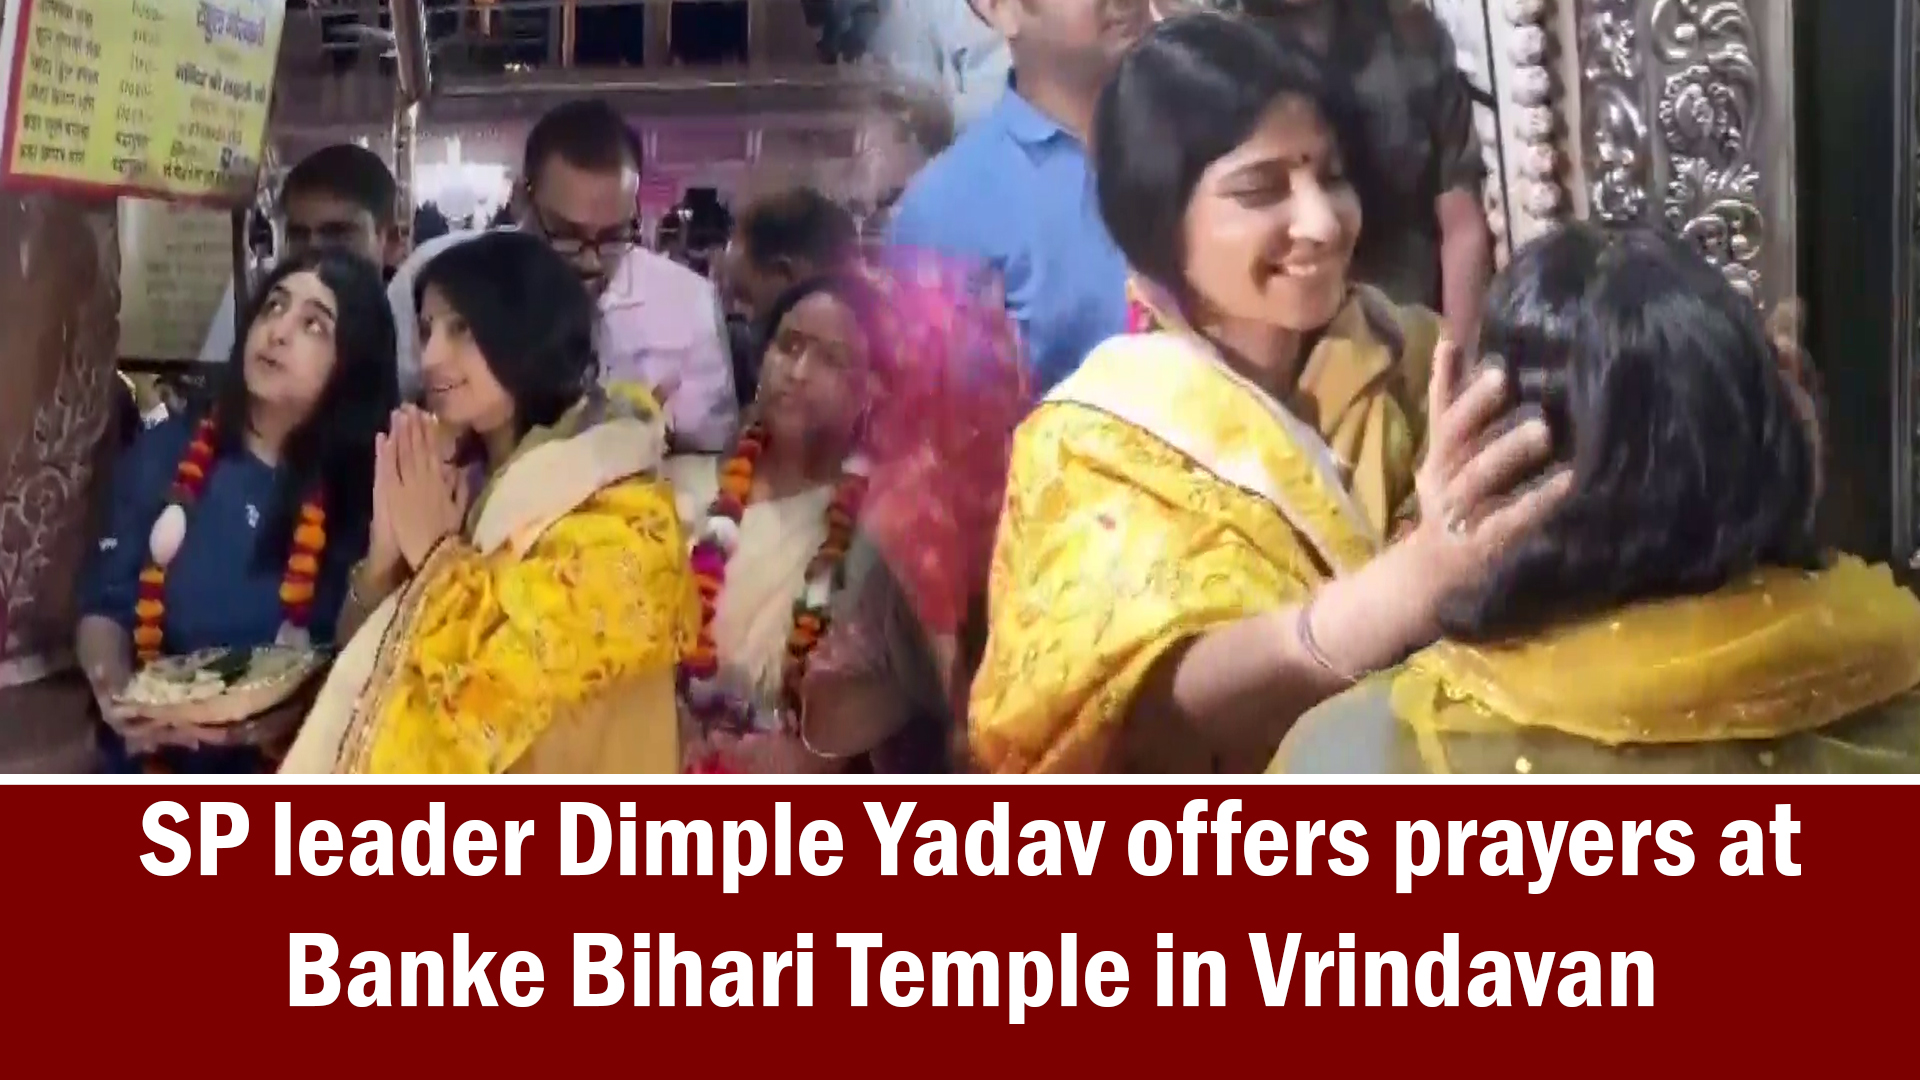 SP leader Dimple Yadav offers prayers at Banke Bihari Temple, in Vrindavan, Mathura